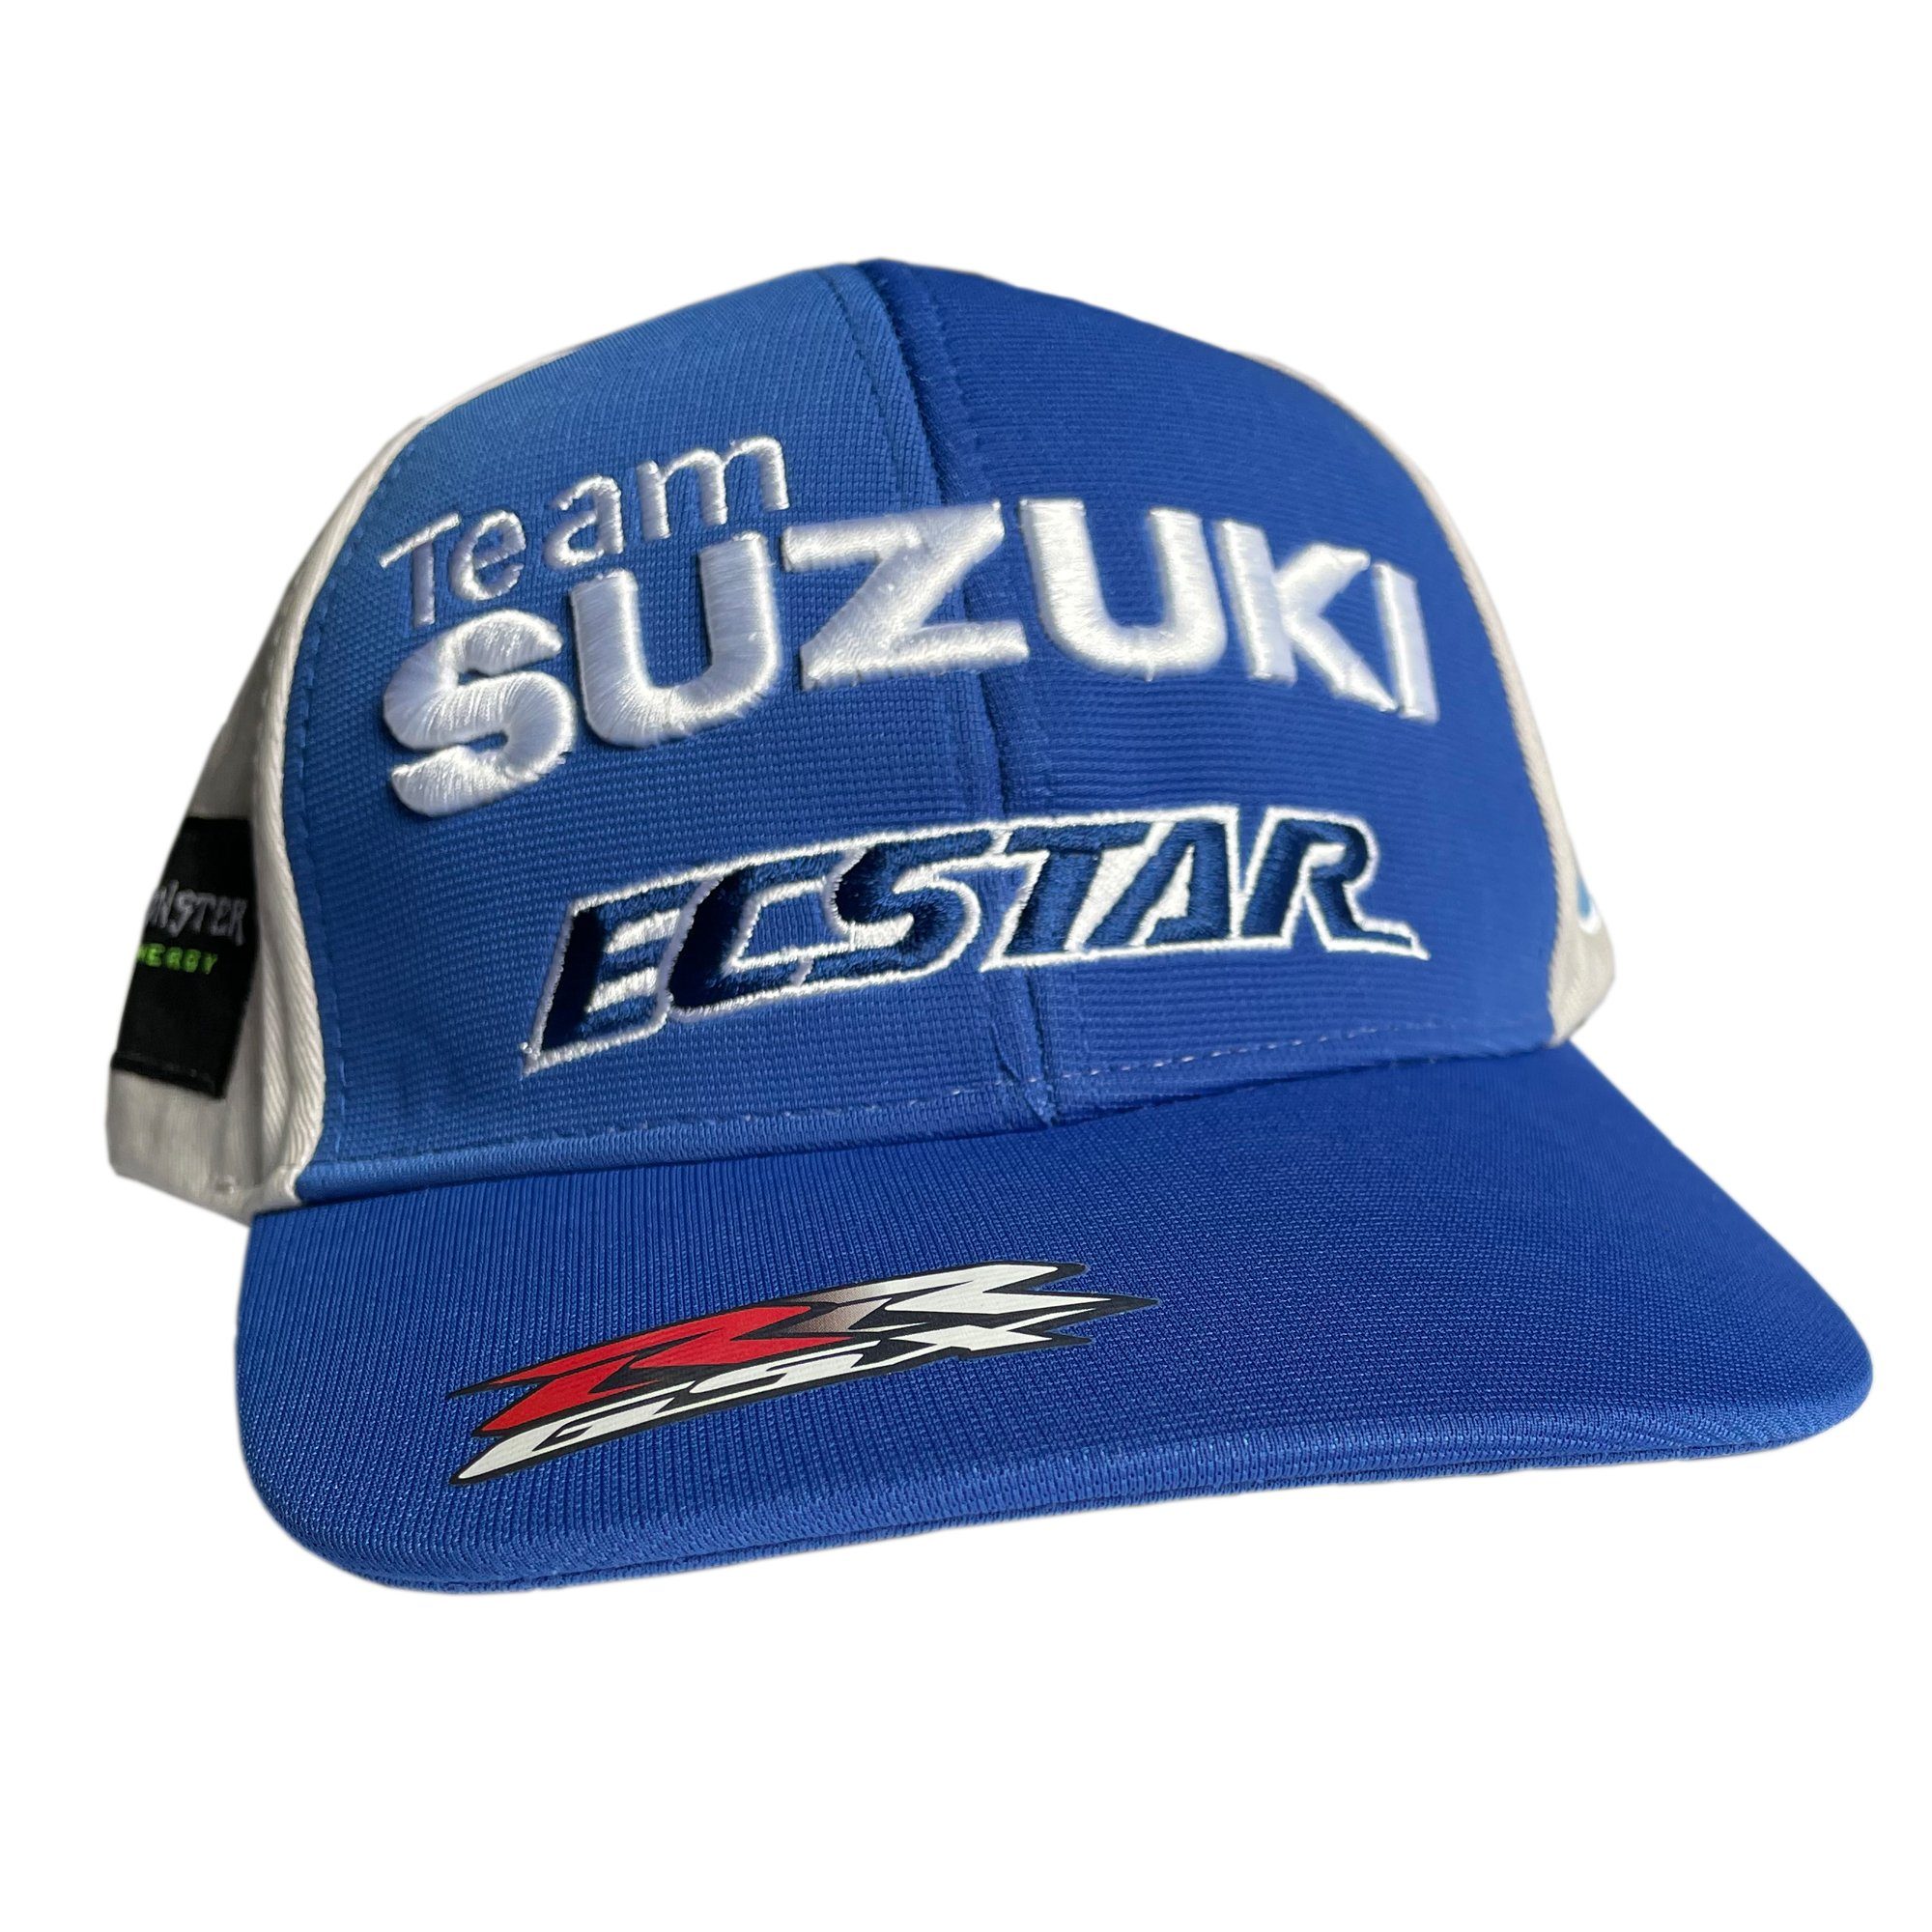 Cap Base Suzuki Cap Ecstars MotoGP MotoGP SUZUKI Ecstar Schirmmütze